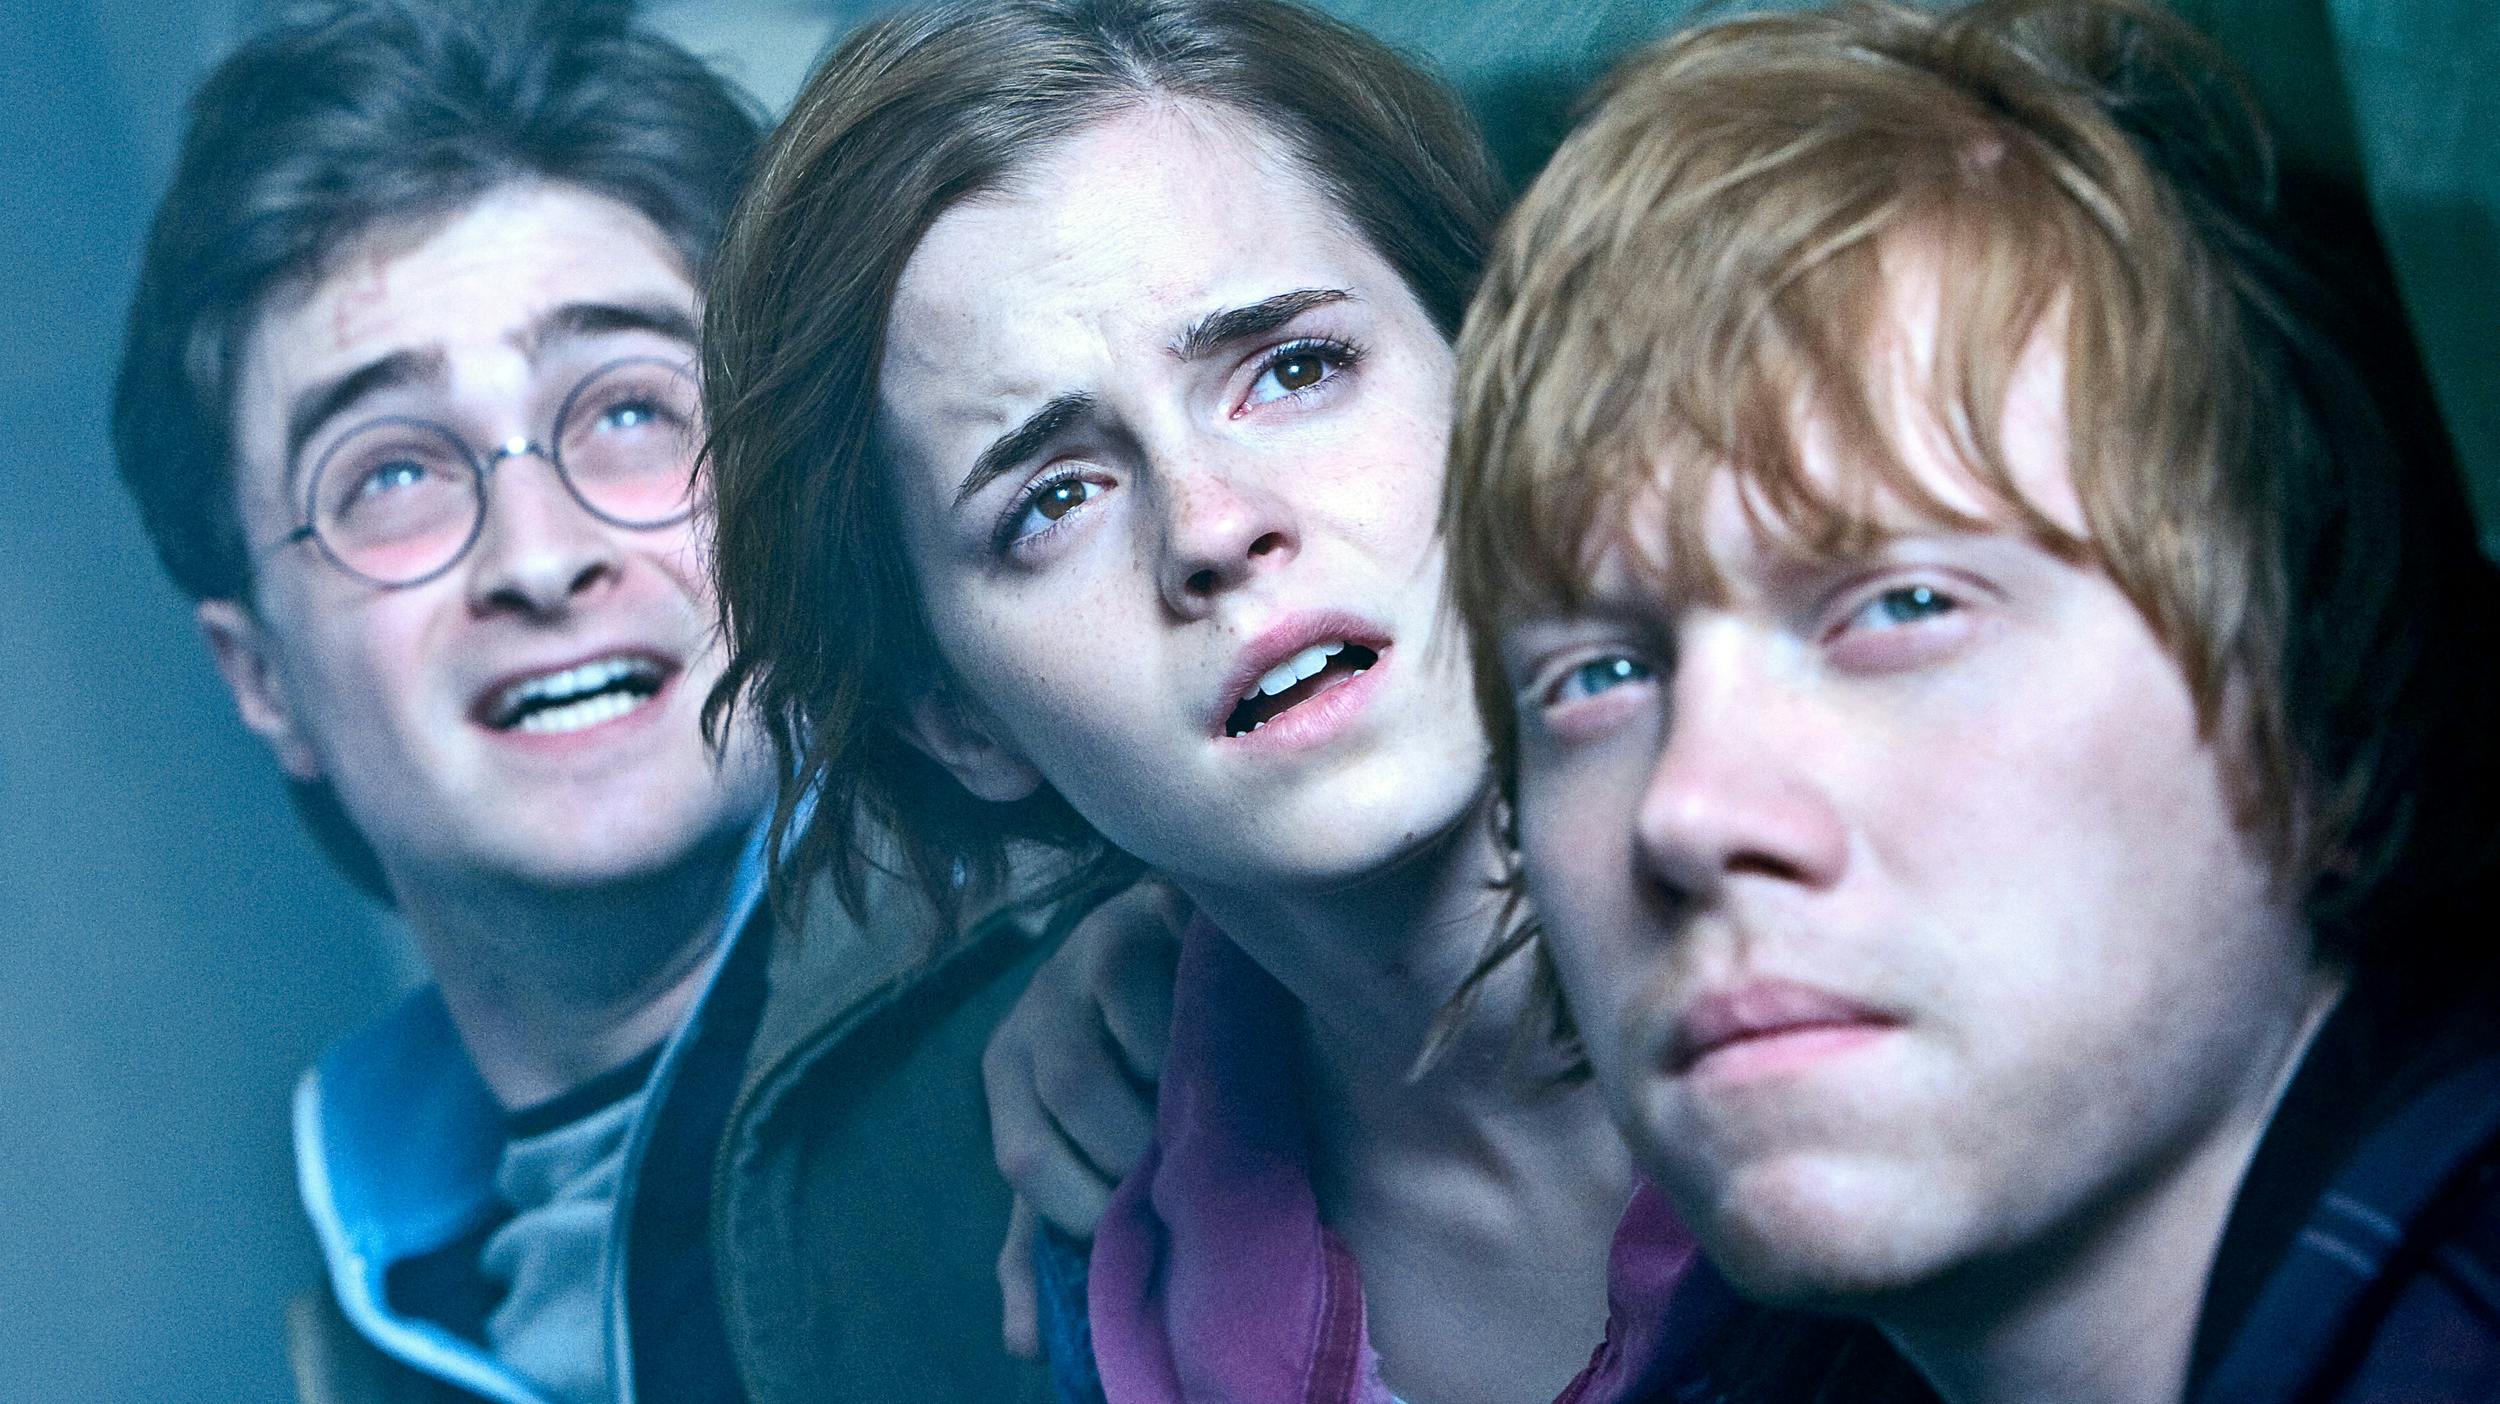 Daniel Radcliffe, Emma Watson, Rupert Grint i "Harry Potter og dødsregalierne". 